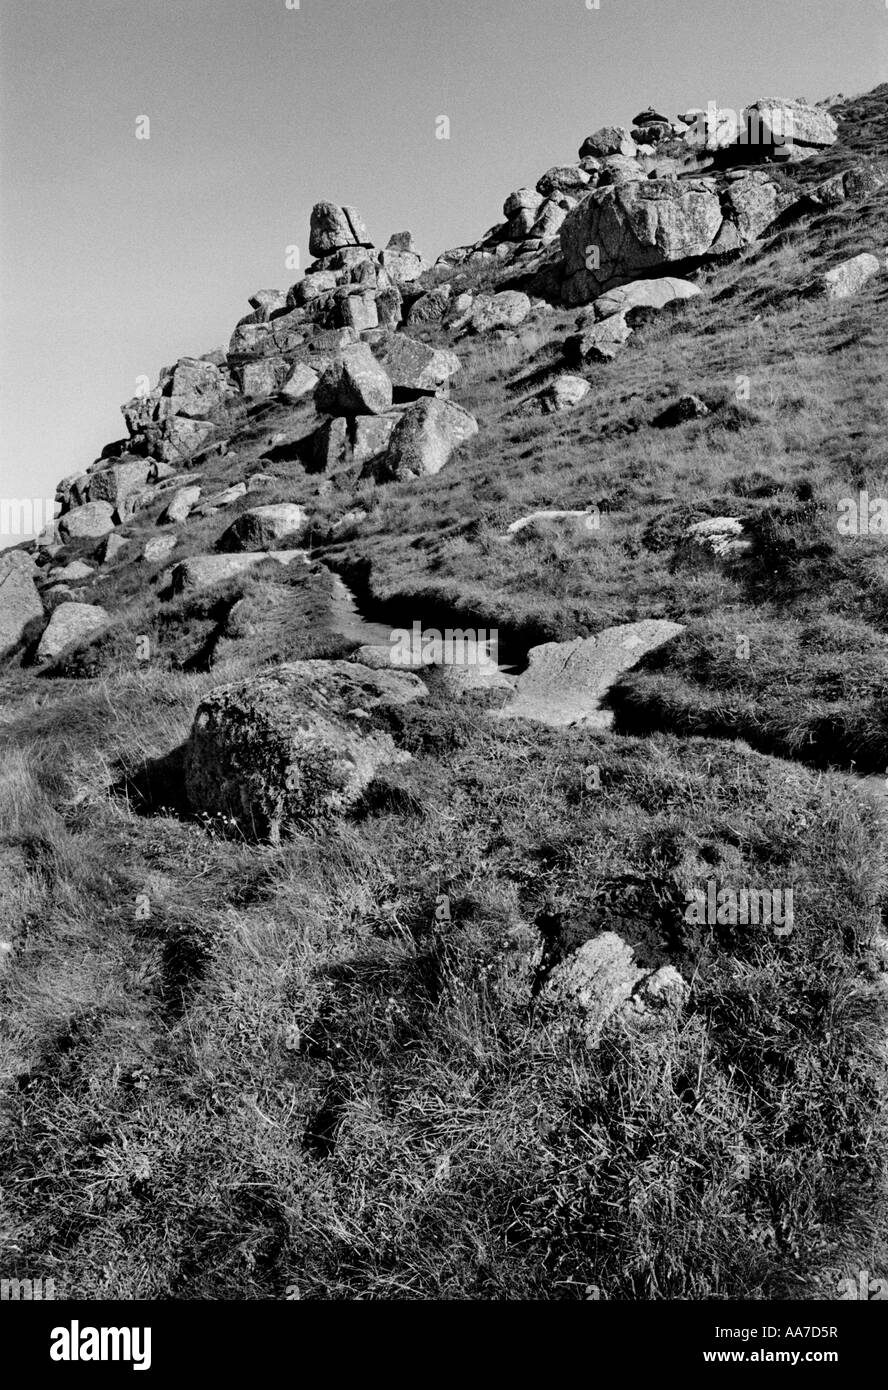 Les roches et le south west coast path, Cornwall. United Kingdom. Juin 2007. Banque D'Images